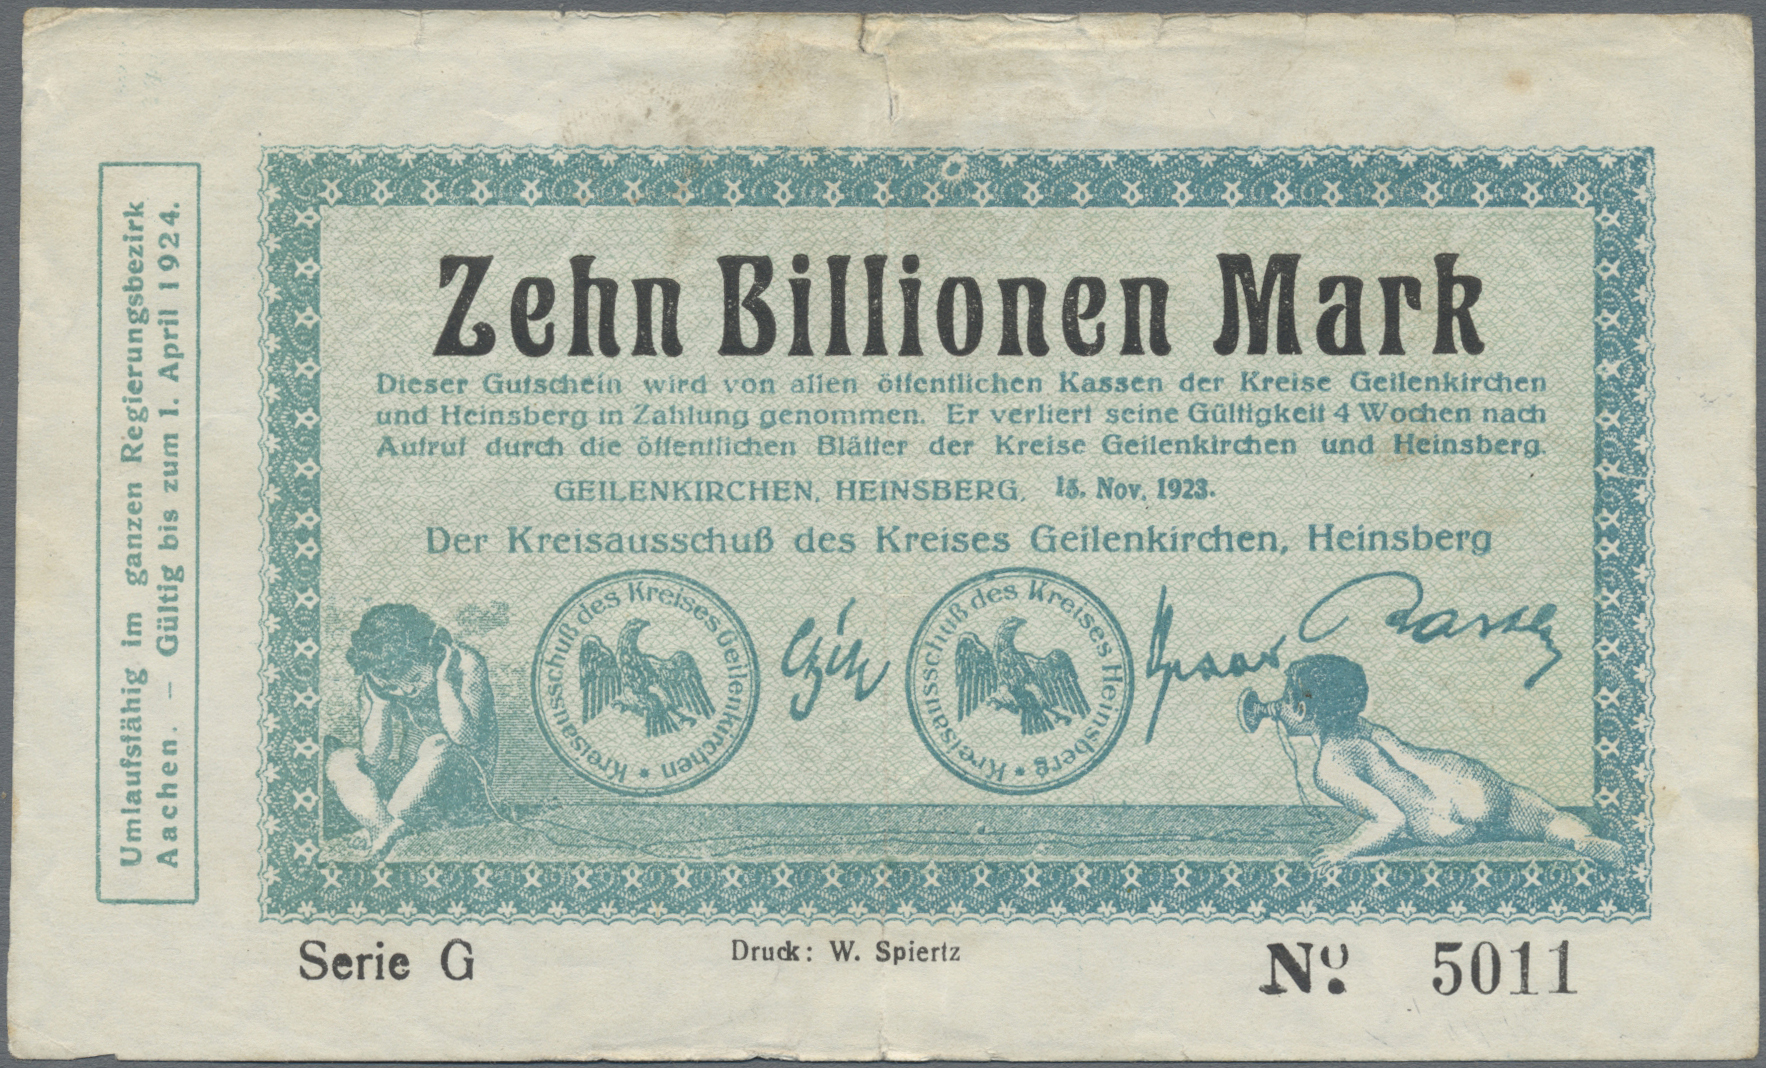 Lot 14709 - Deutschland - Notgeld - Rheinland | Banknoten  -  Auktionshaus Christoph Gärtner GmbH & Co. KG 53rd AUCTION - Day 6 Coins & Banknotes